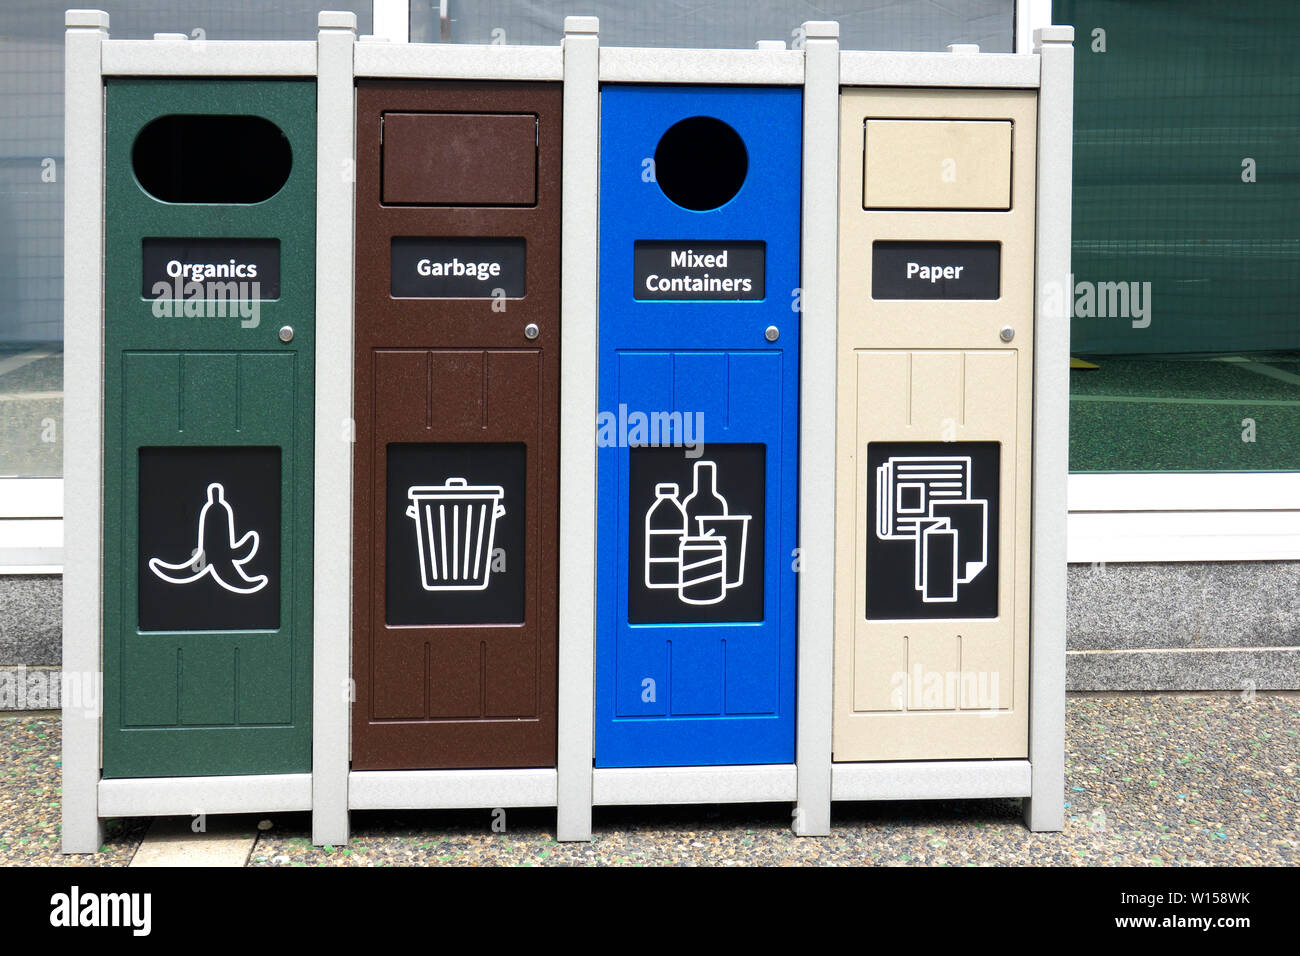 Recipiente de reciclaje con bandejas independientes para materiales orgánicos, basura, envases y papel mixto. Vancouver, B. C. Foto de stock